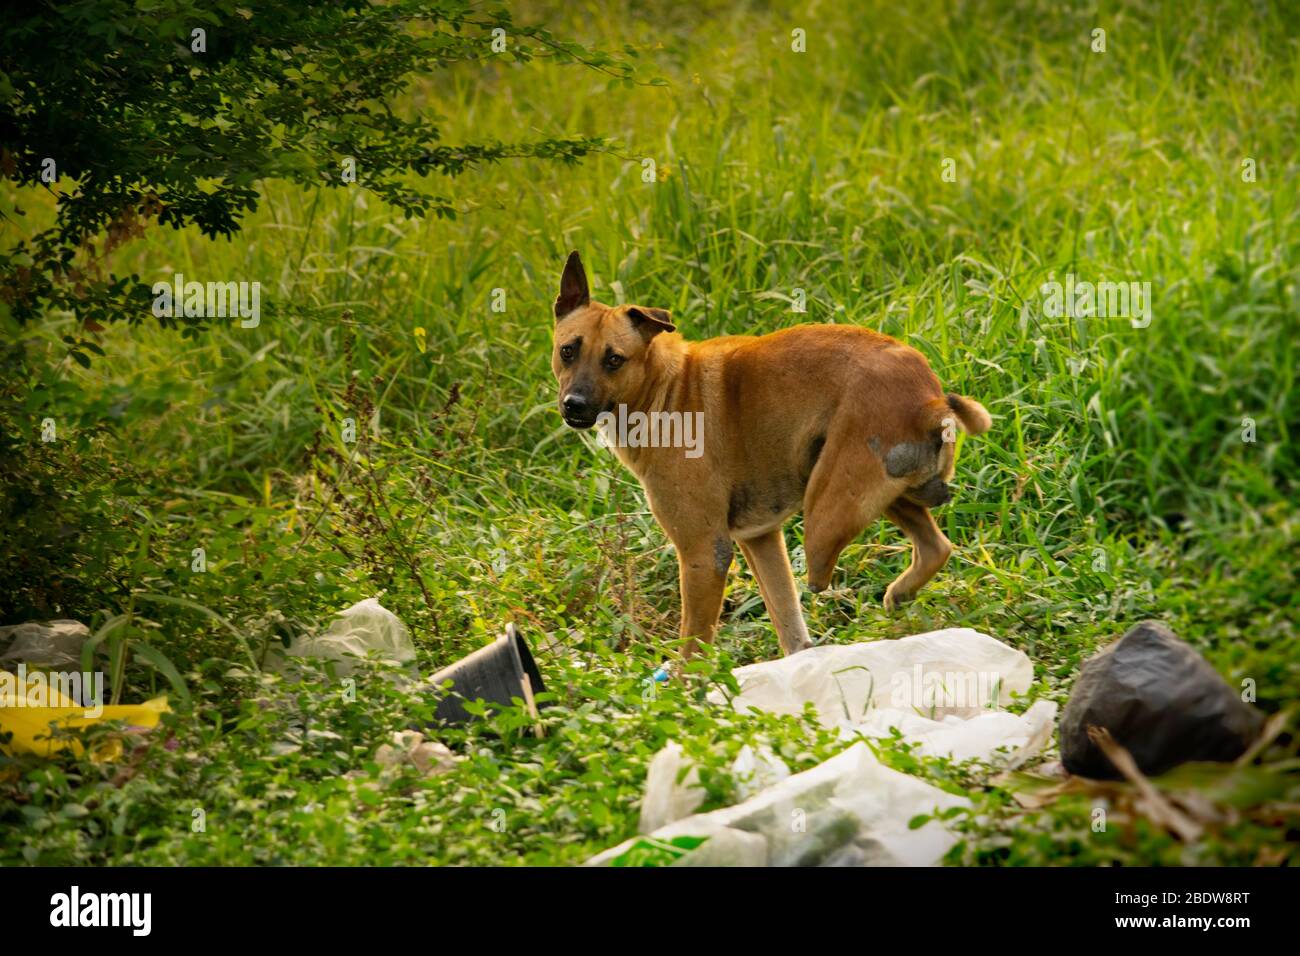 Marrone, randagi, tre zampe cane guardare indietro alla macchina fotografica mentre inciampato sopra spazzatura in junkyard Foto Stock